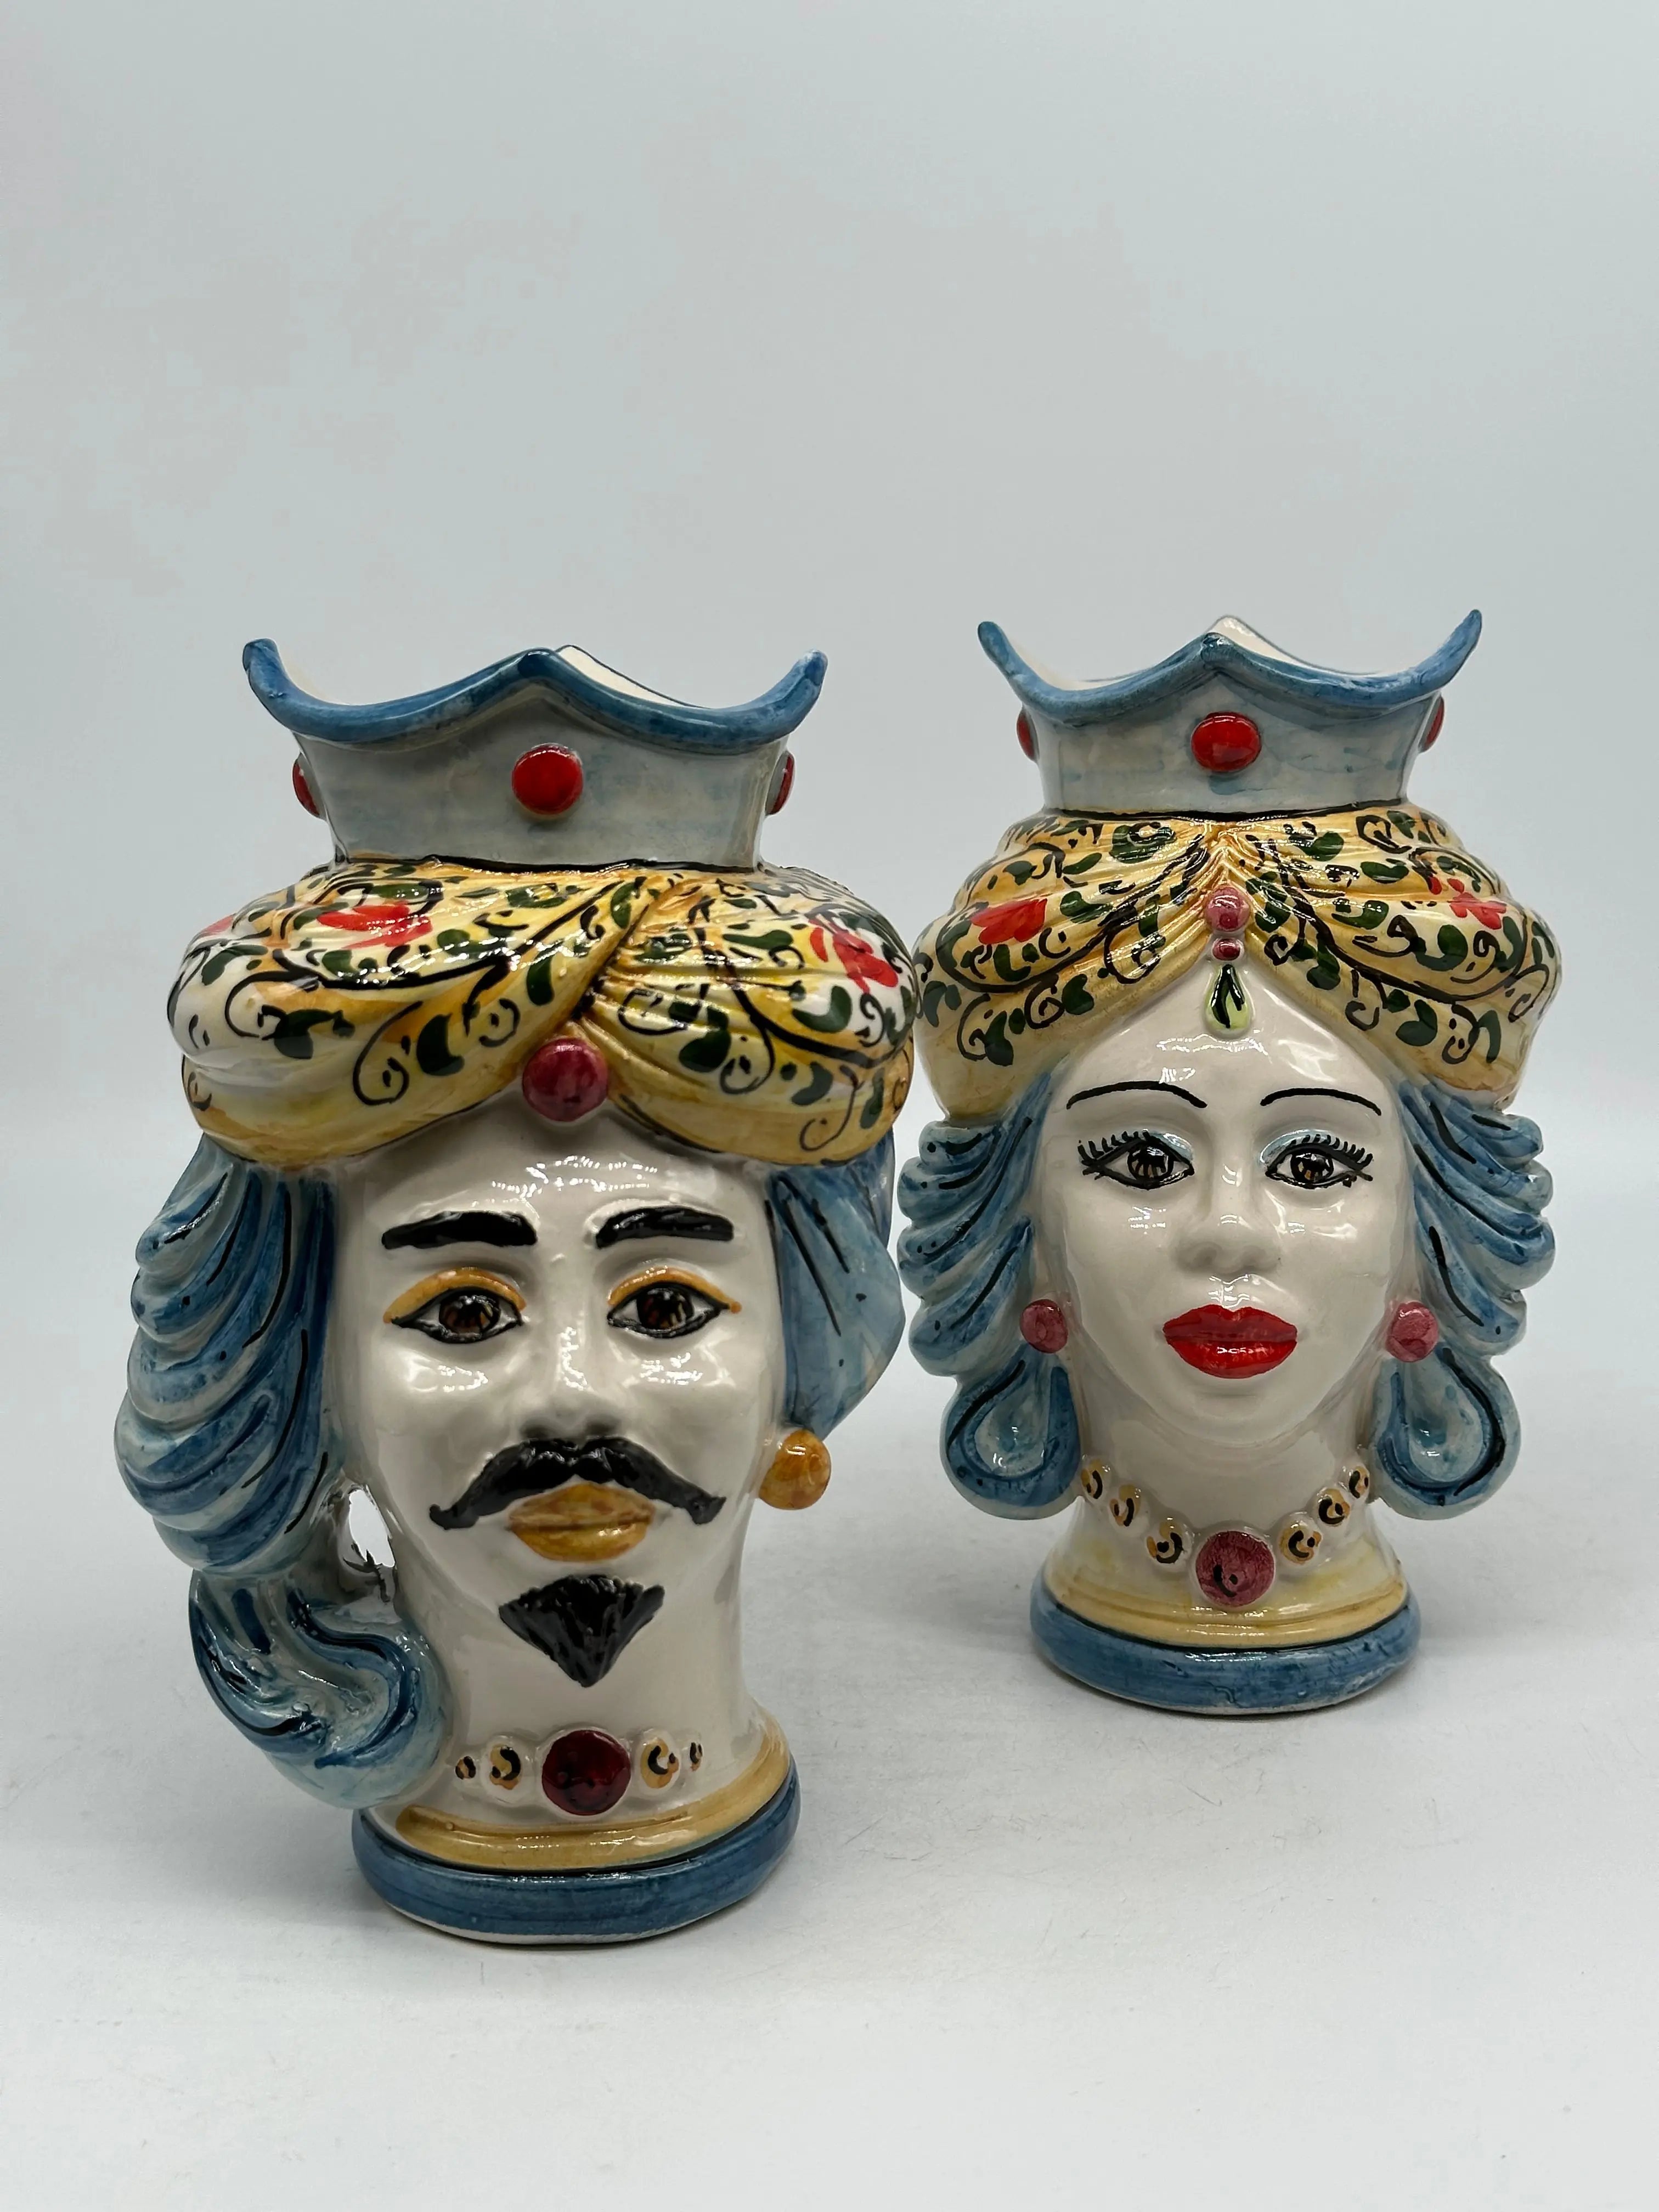 Coppia Teste di Moro DAFNE Ceramica Caltagirone cm H.20 L.12 Artigianale VARI COLORI DD CERAMICHE SICILIANE